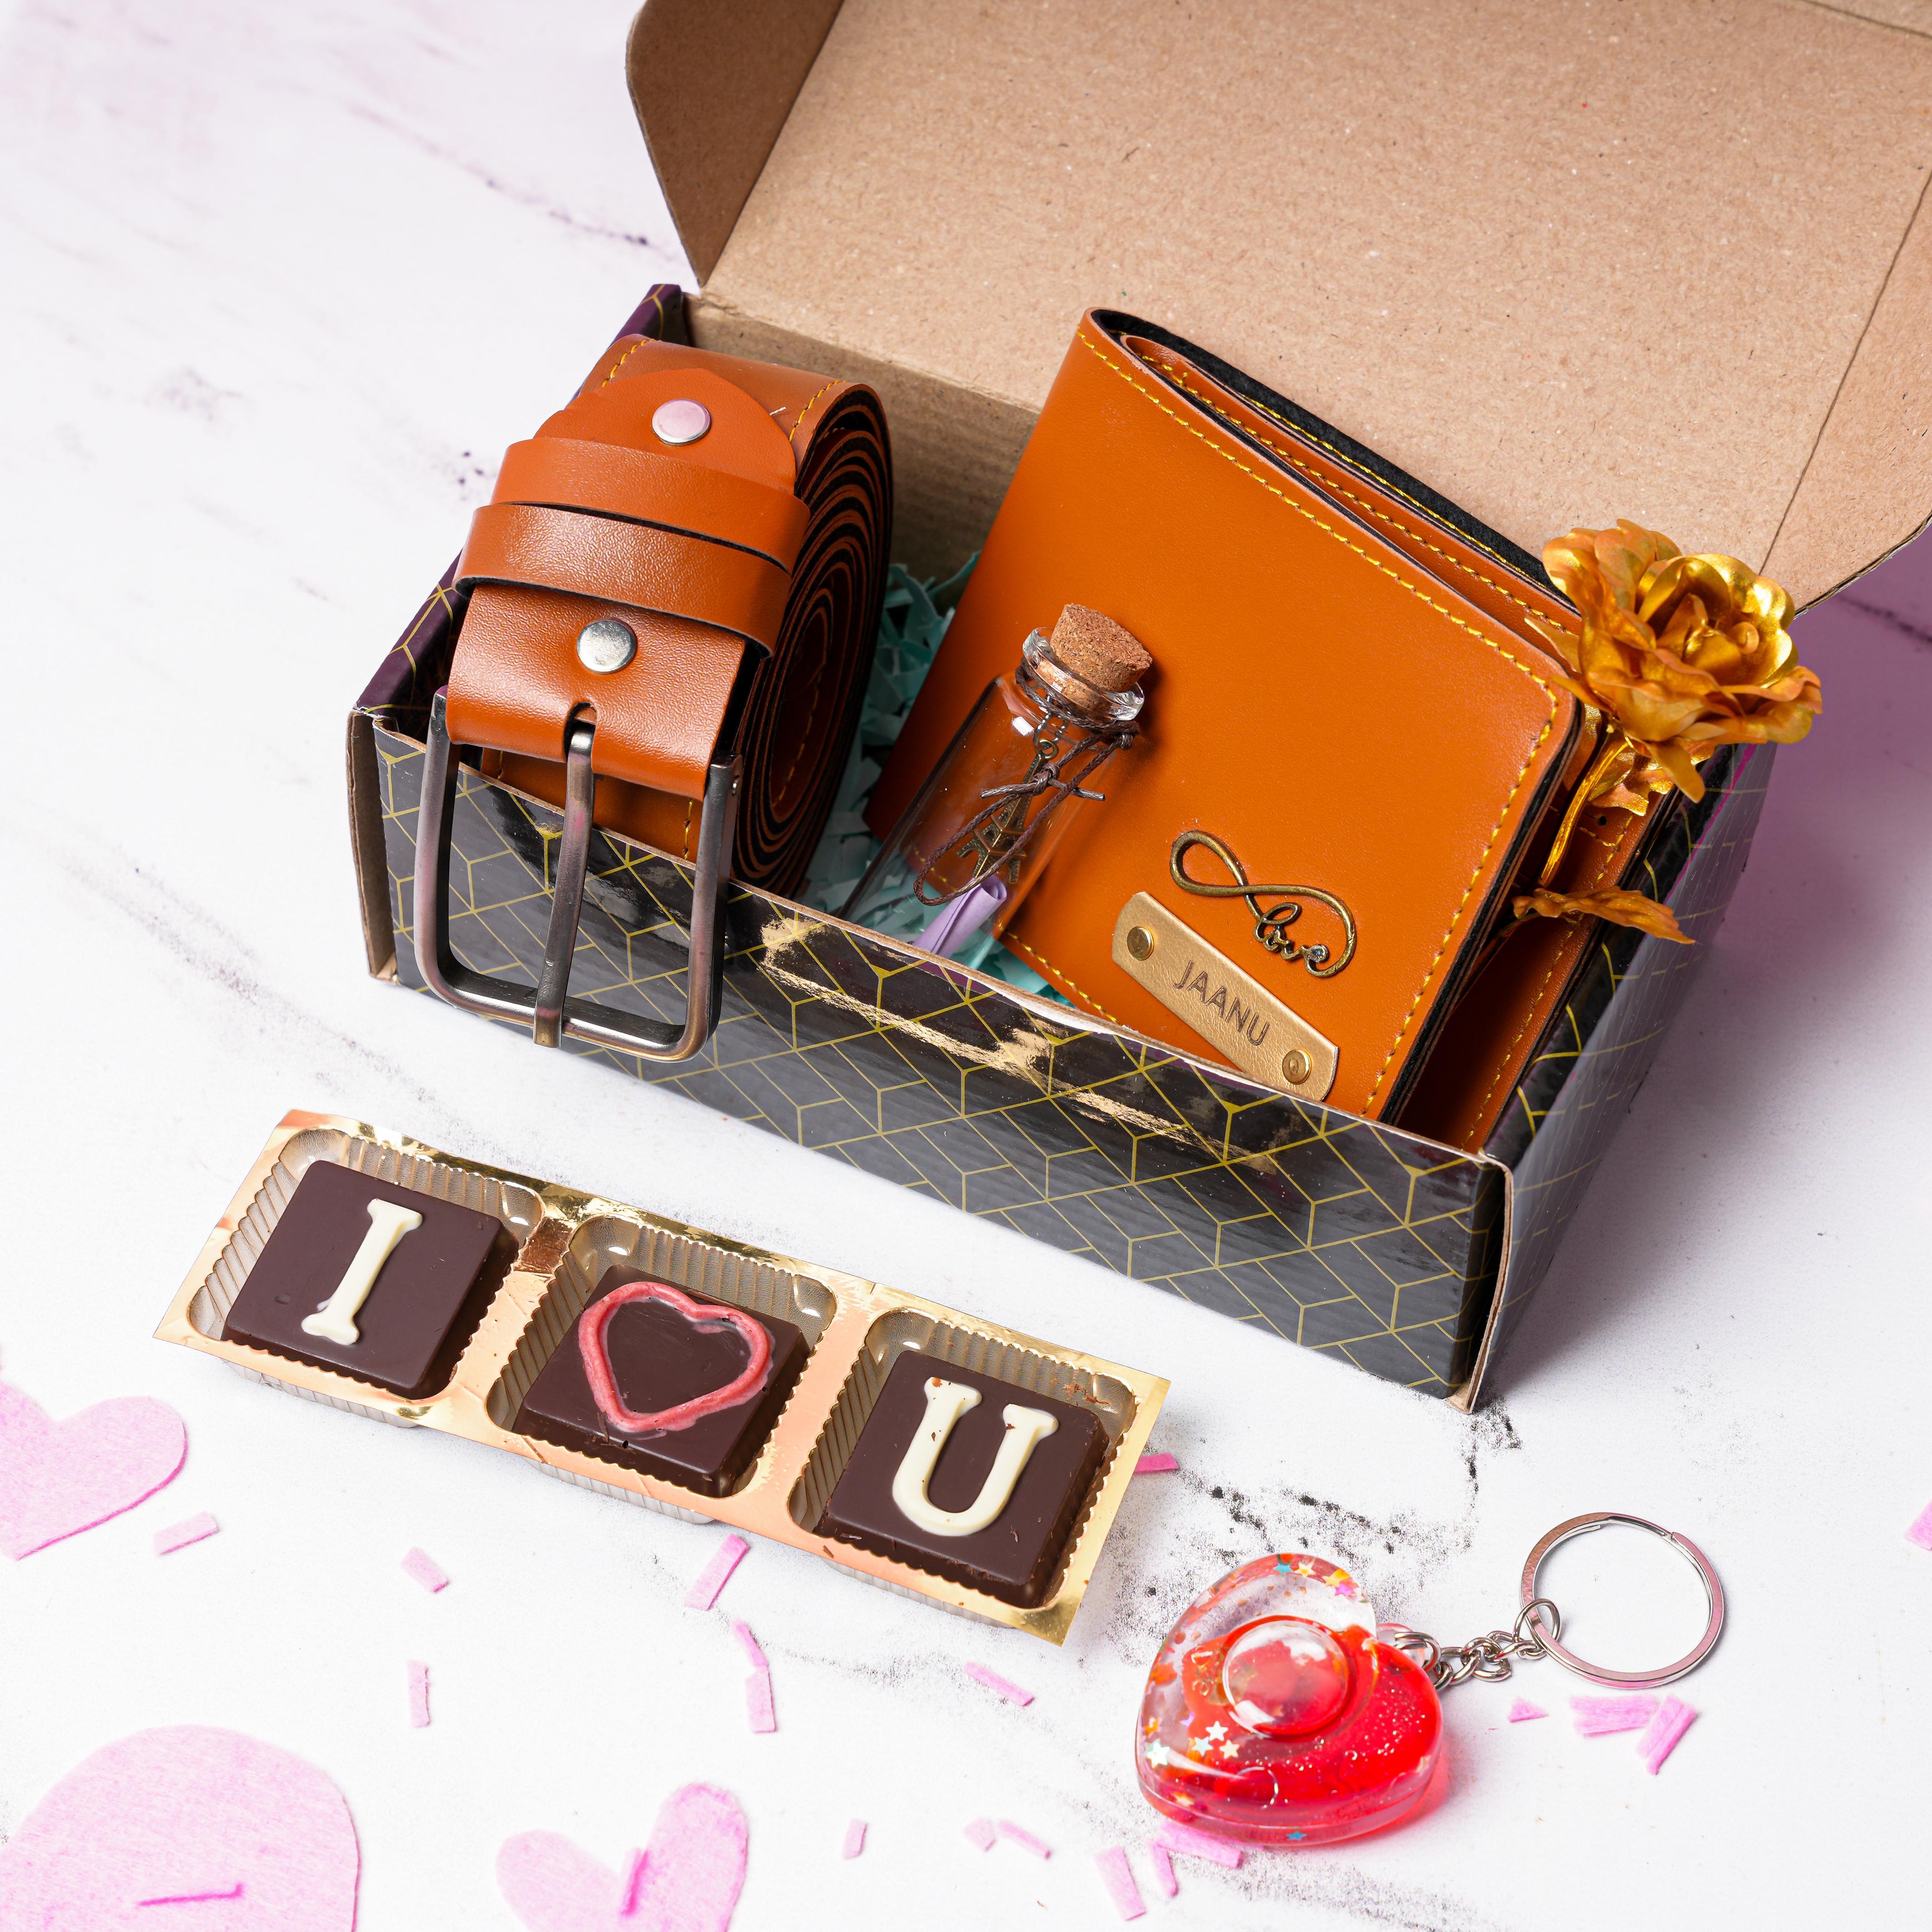 Best Valentine's Gift for Him Either Boyfriend or Husband – Sylvi